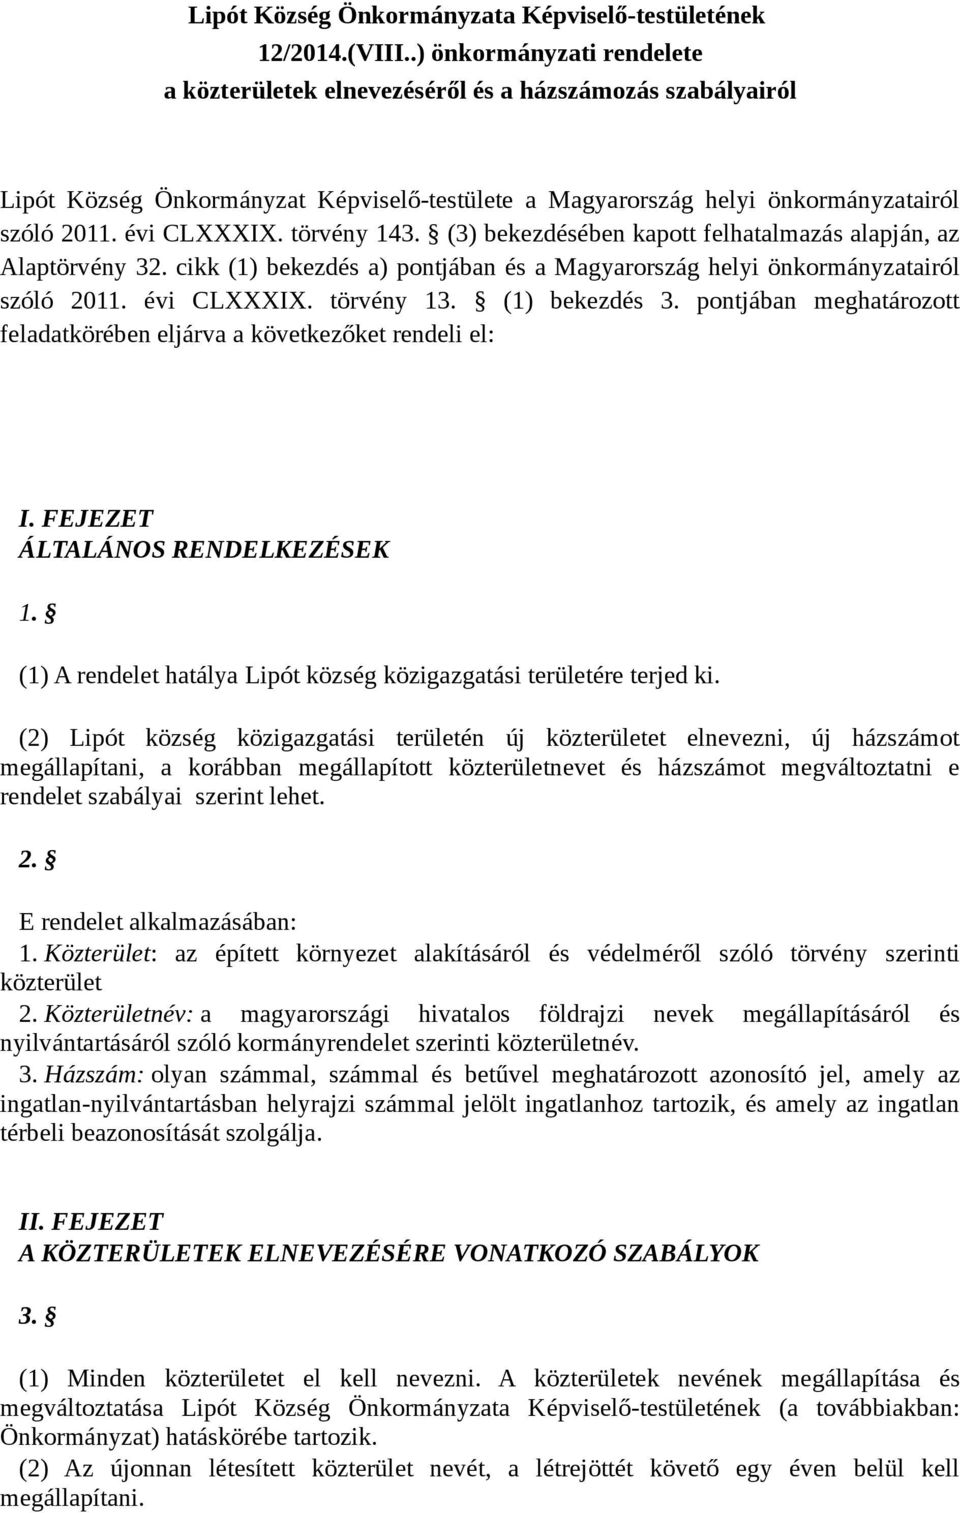 törvény 143. (3) bekezdésében kapott felhatalmazás alapján, az Alaptörvény 32. cikk (1) bekezdés a) pontjában és a Magyarország helyi önkormányzatairól szóló 2011. évi CLXXXIX. törvény 13.